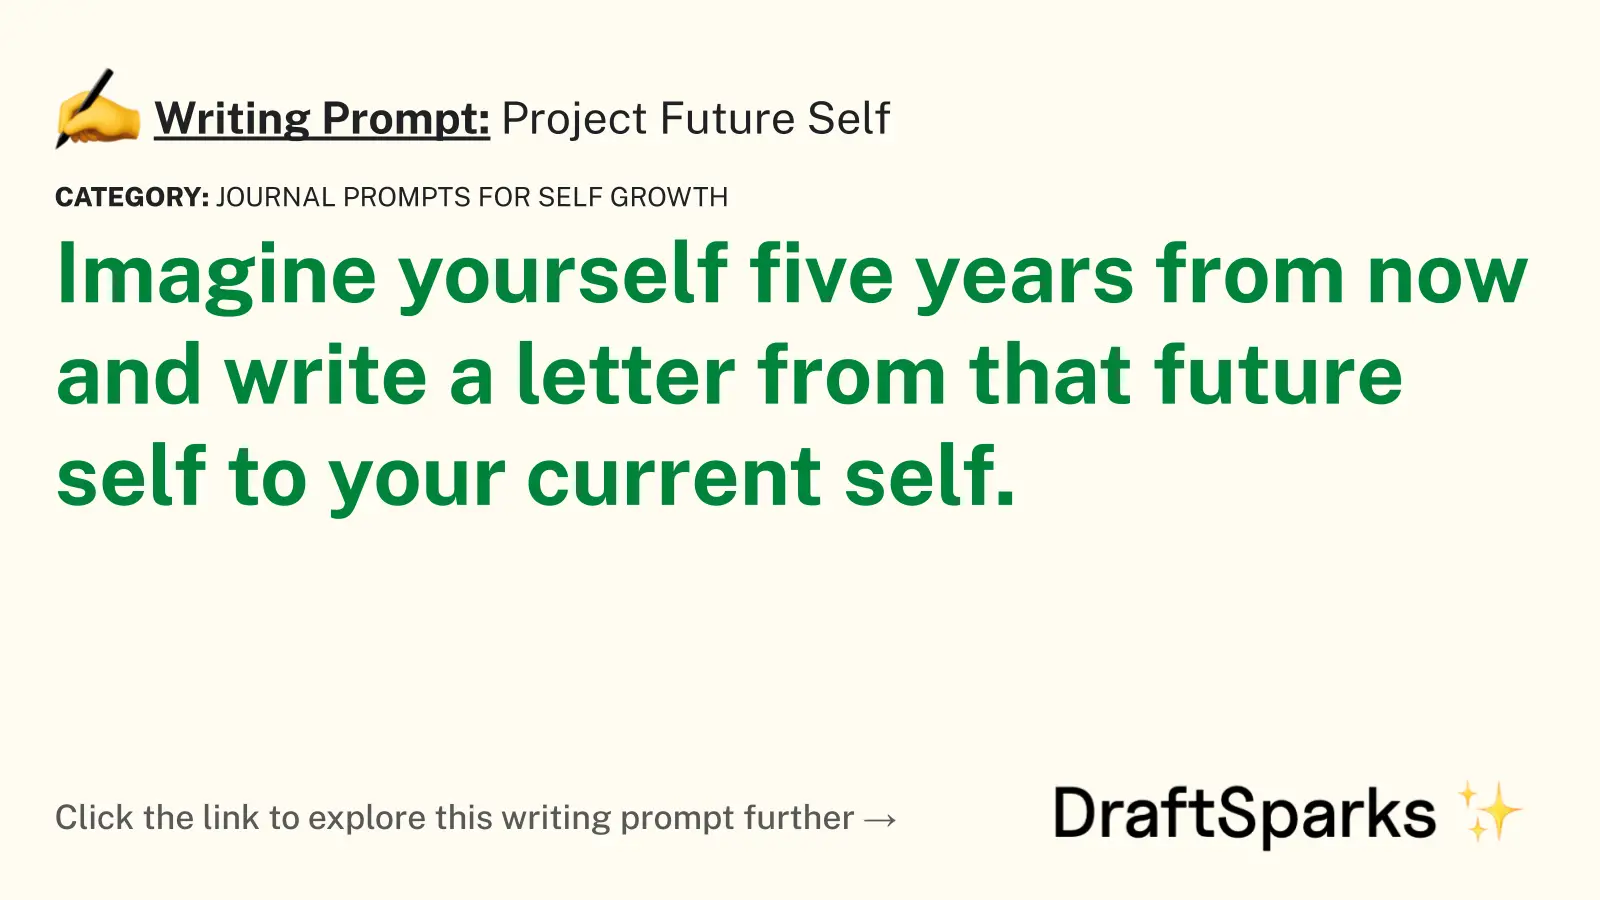 Project Future Self